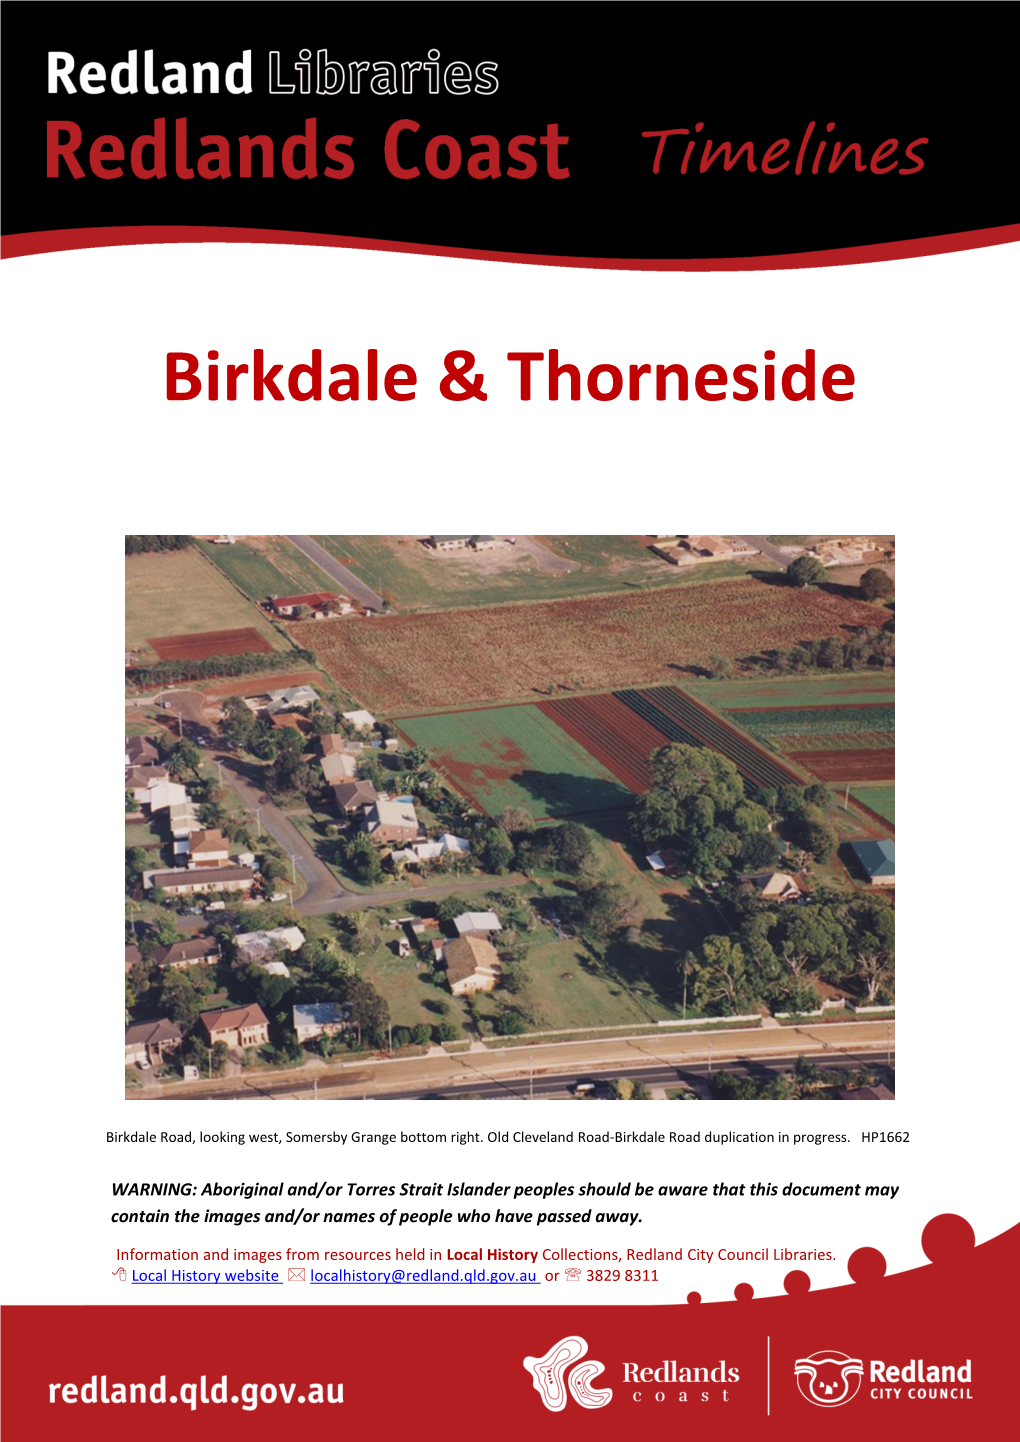 Birkdale & Thorneside